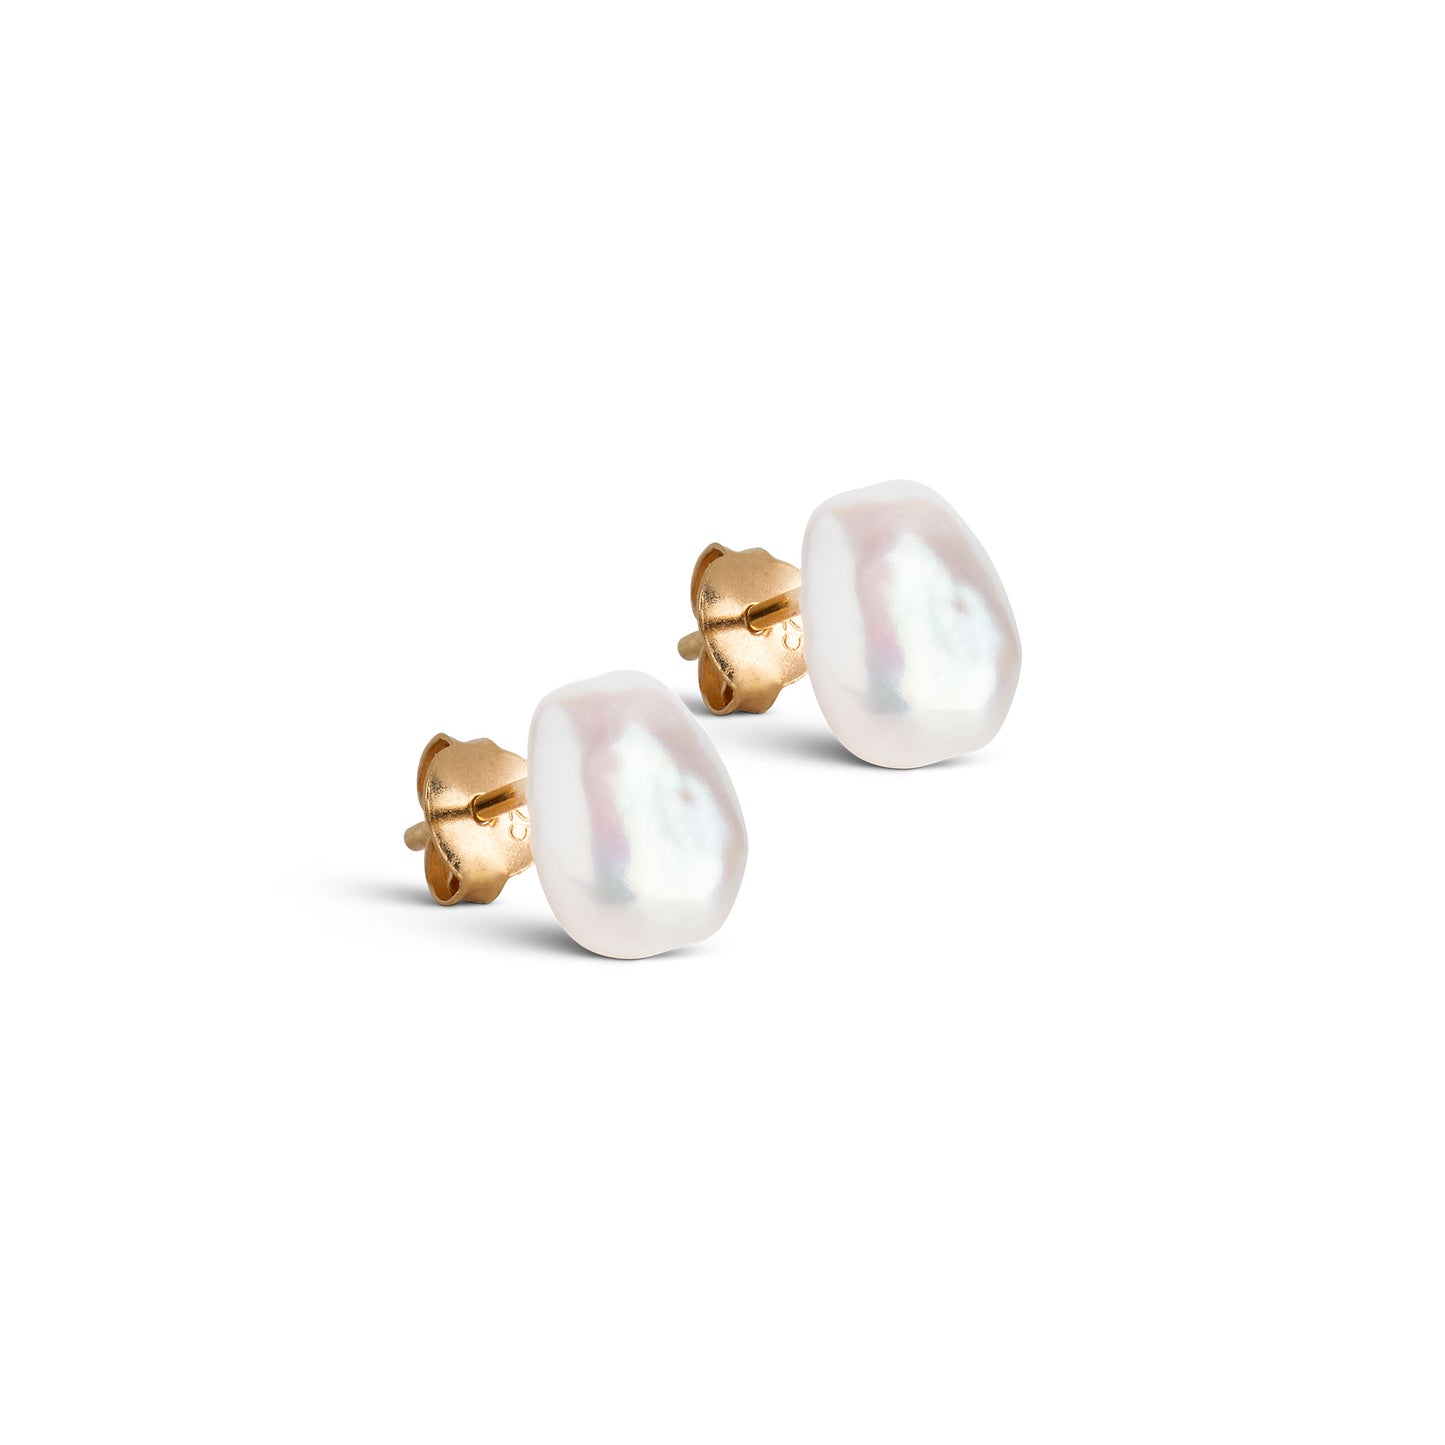 ENAMEL Copenhagen Studs, Baroque Pearl Earrings Baroque Pearls